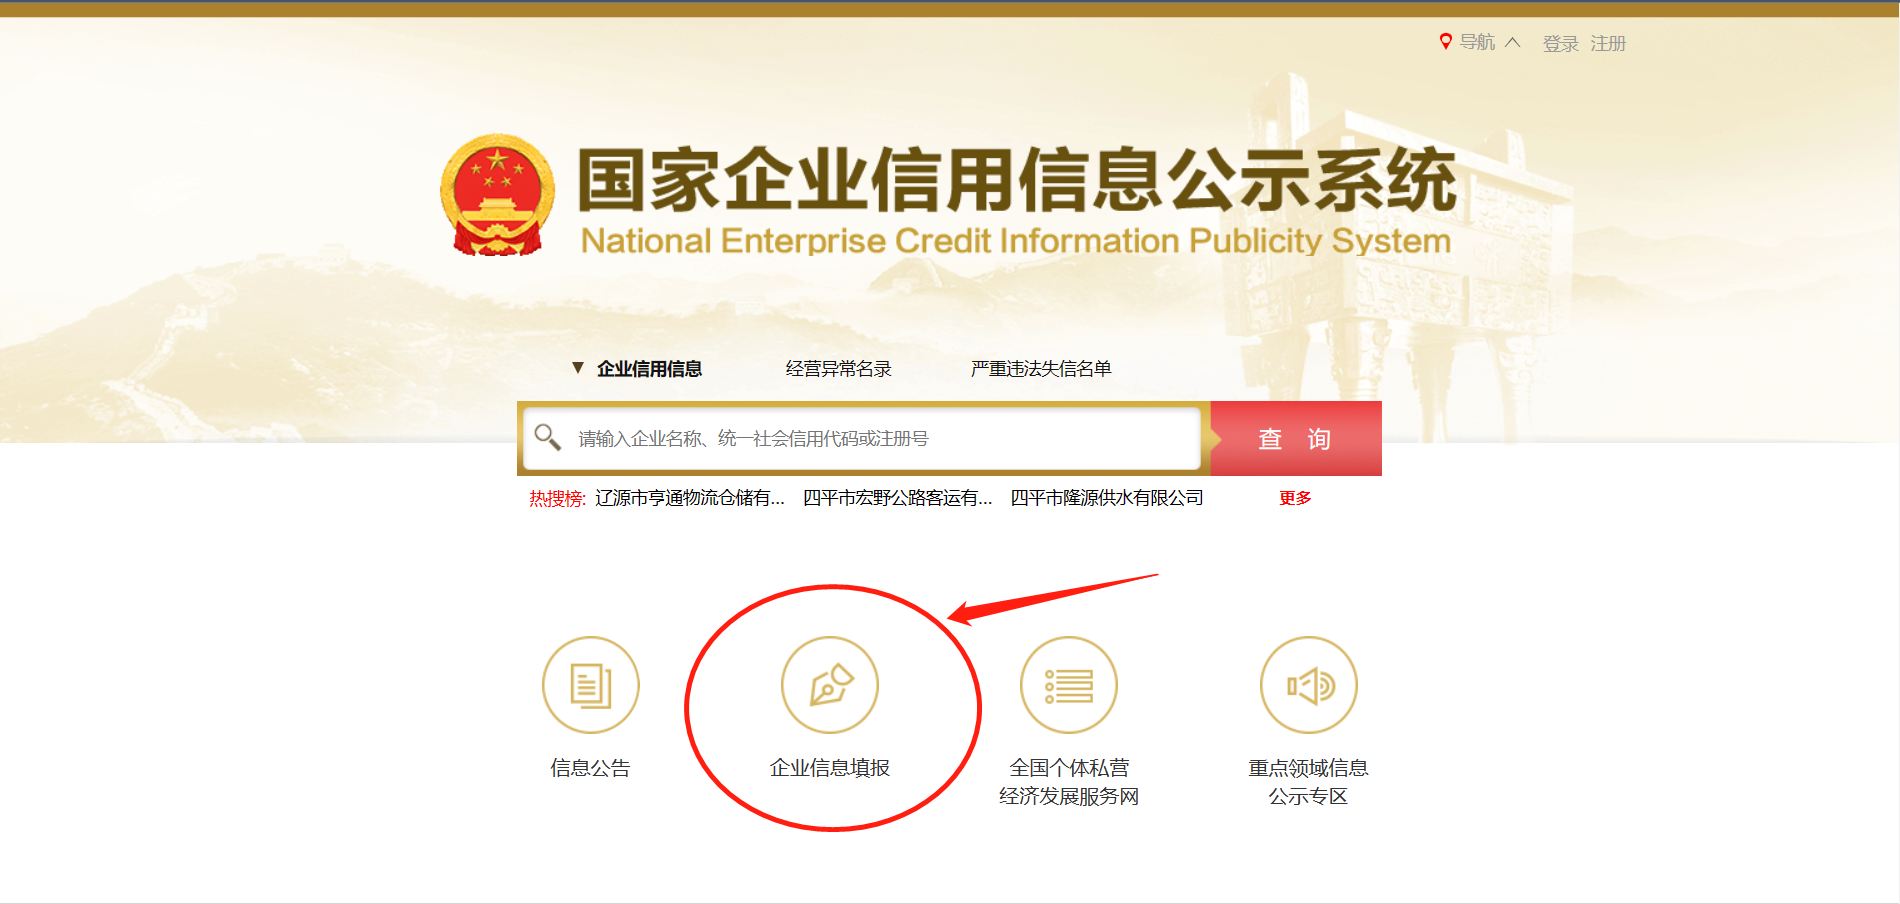 阳江市知识产权保护协会现开展免费代办企业年度报告服务